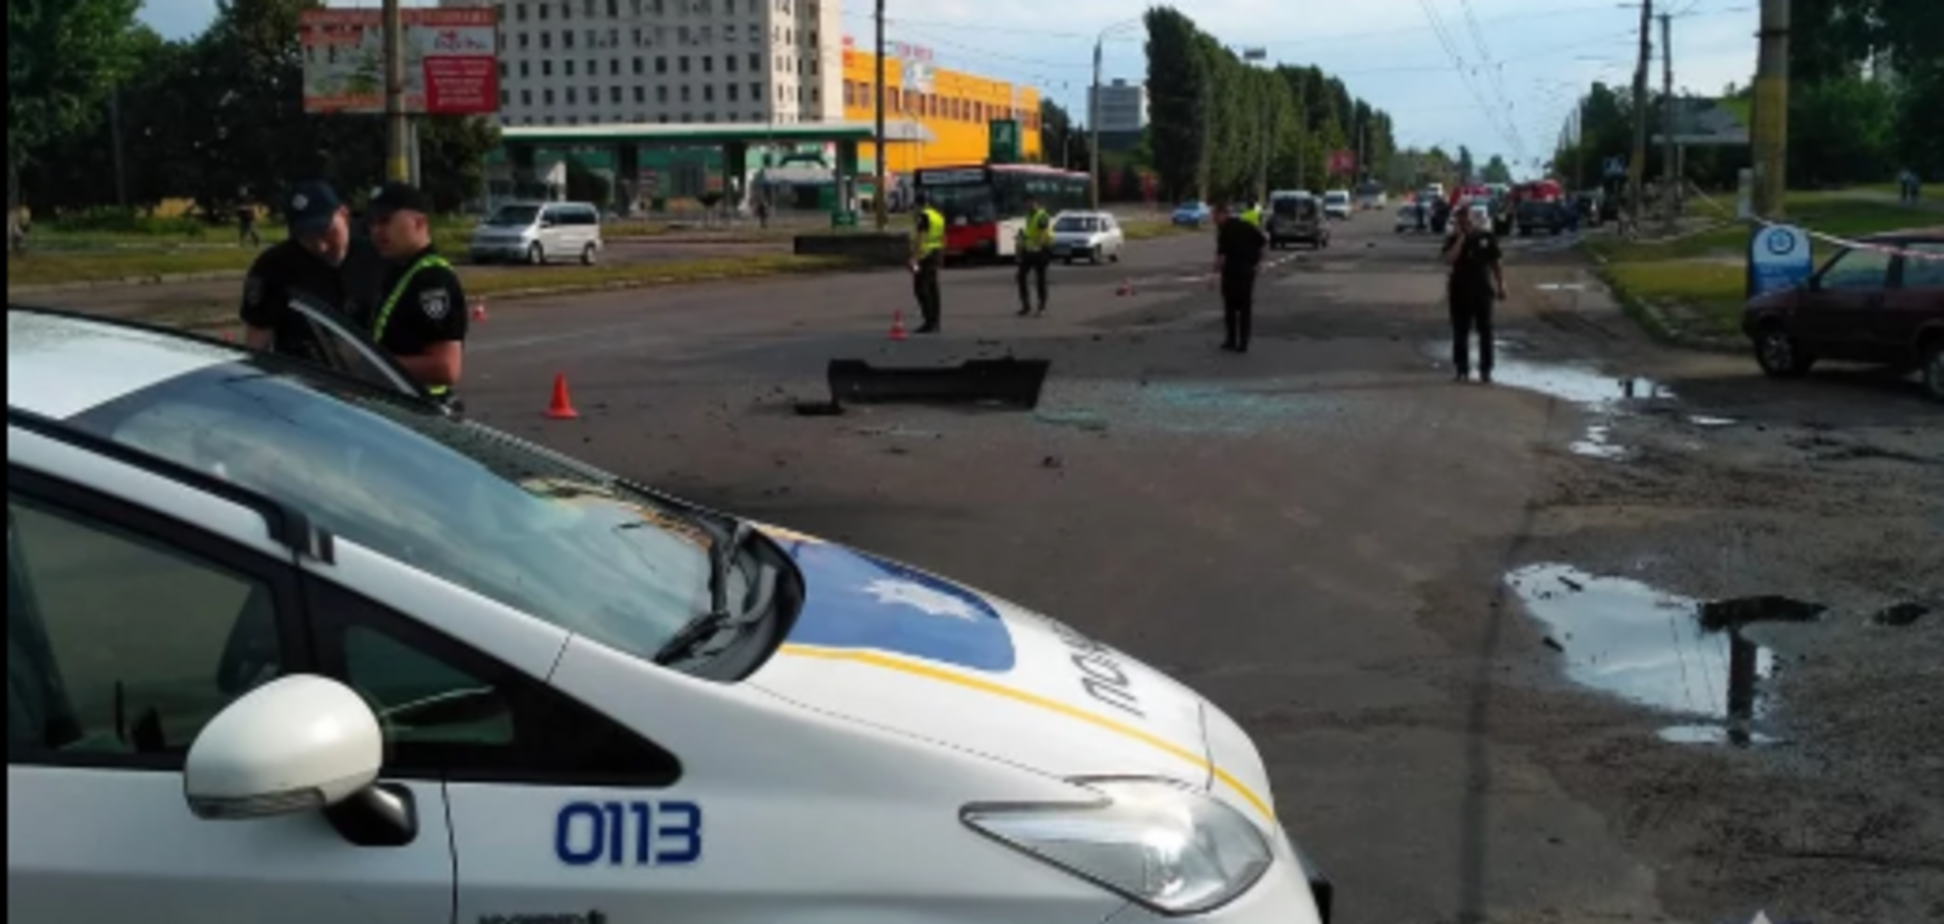 Салон был в крови: появились подробности взрыва авто бизнесмена в Черкассах